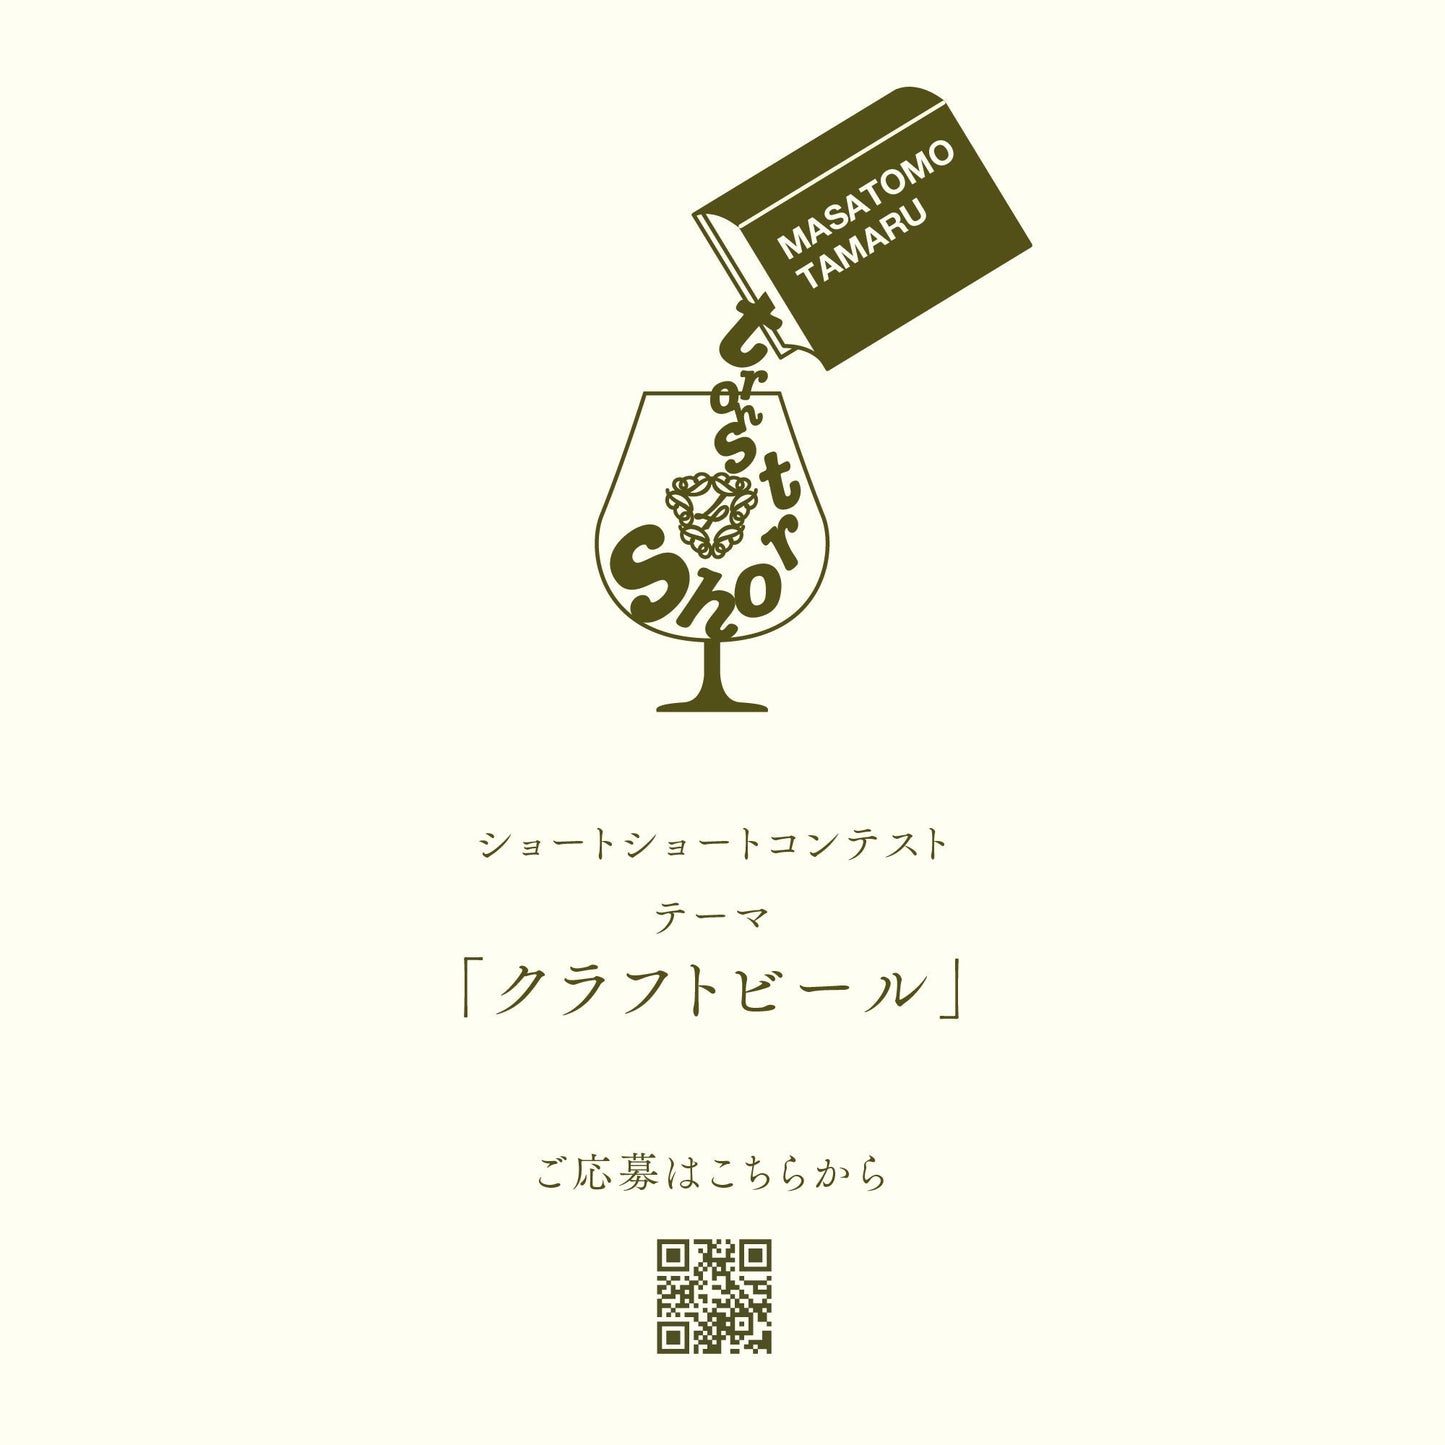 「ラベル小説」ビールセット "Novel Blend" | ショートショート作家 田丸雅智 × DD4D BREWING